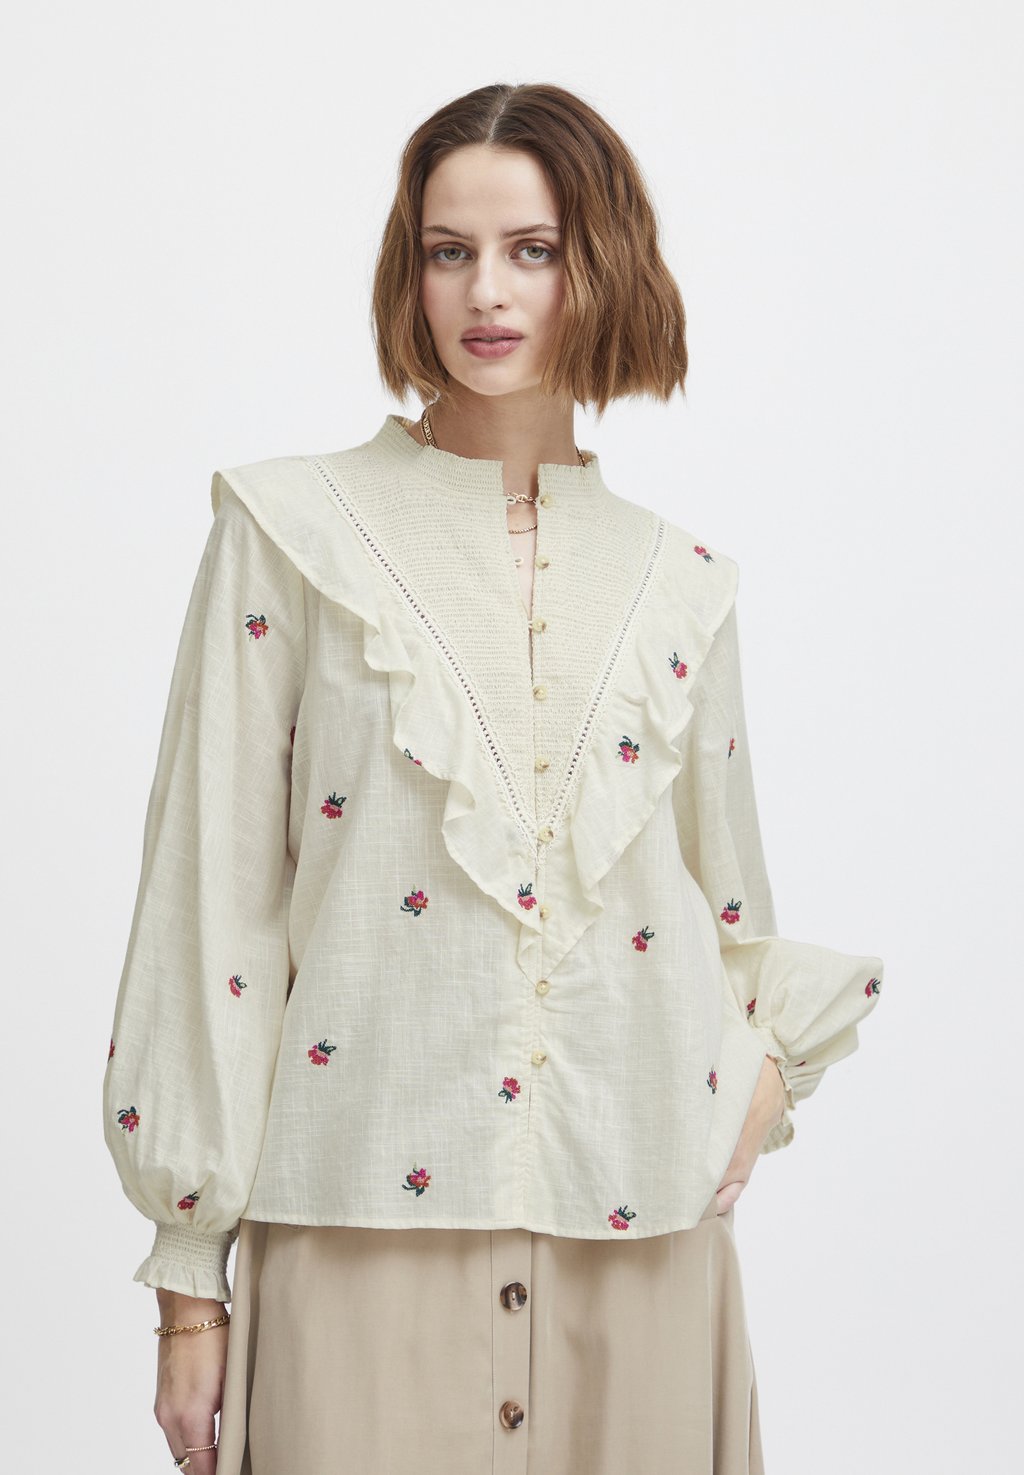 Рубашка Atelier Rêve, цветочная вышивка так diamond embroidery 3d flower